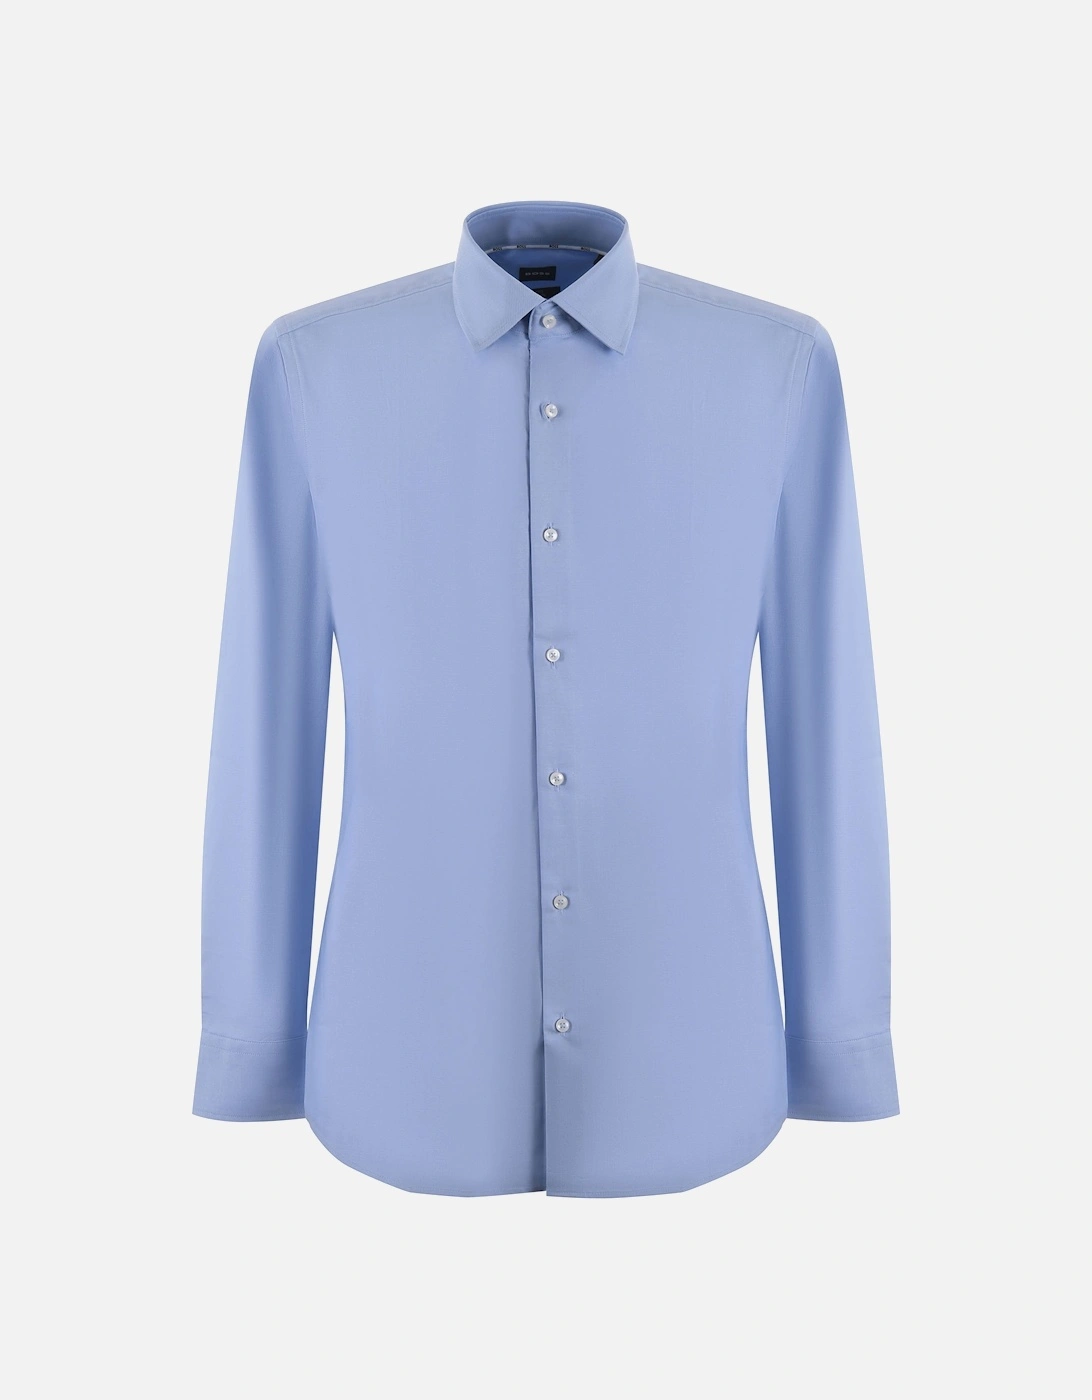 Boss H-hank-kent-c6-242 Long Sleeved Shirt Light Pastel Blue, 4 of 3